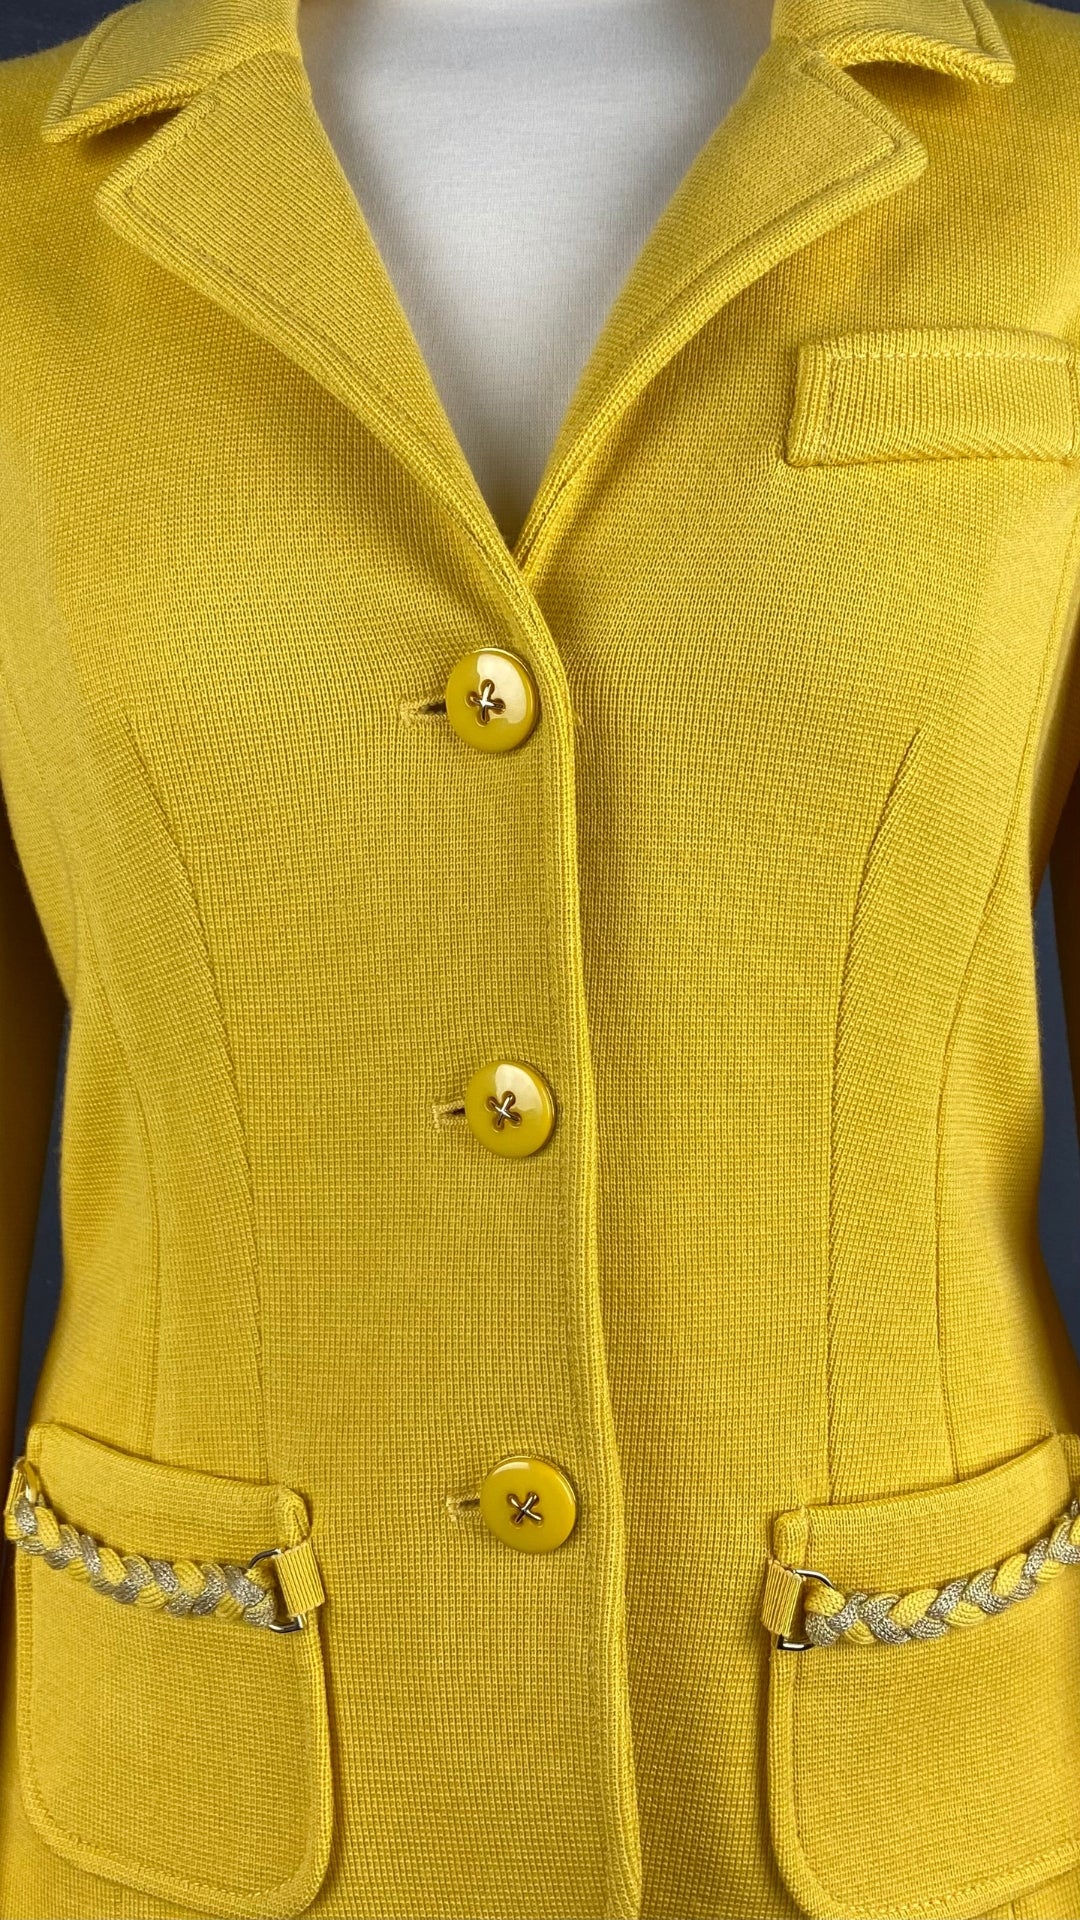 Veste style blazer jaune doré en laine Luisa Spagnoli, taille small. Vue des détails de face.